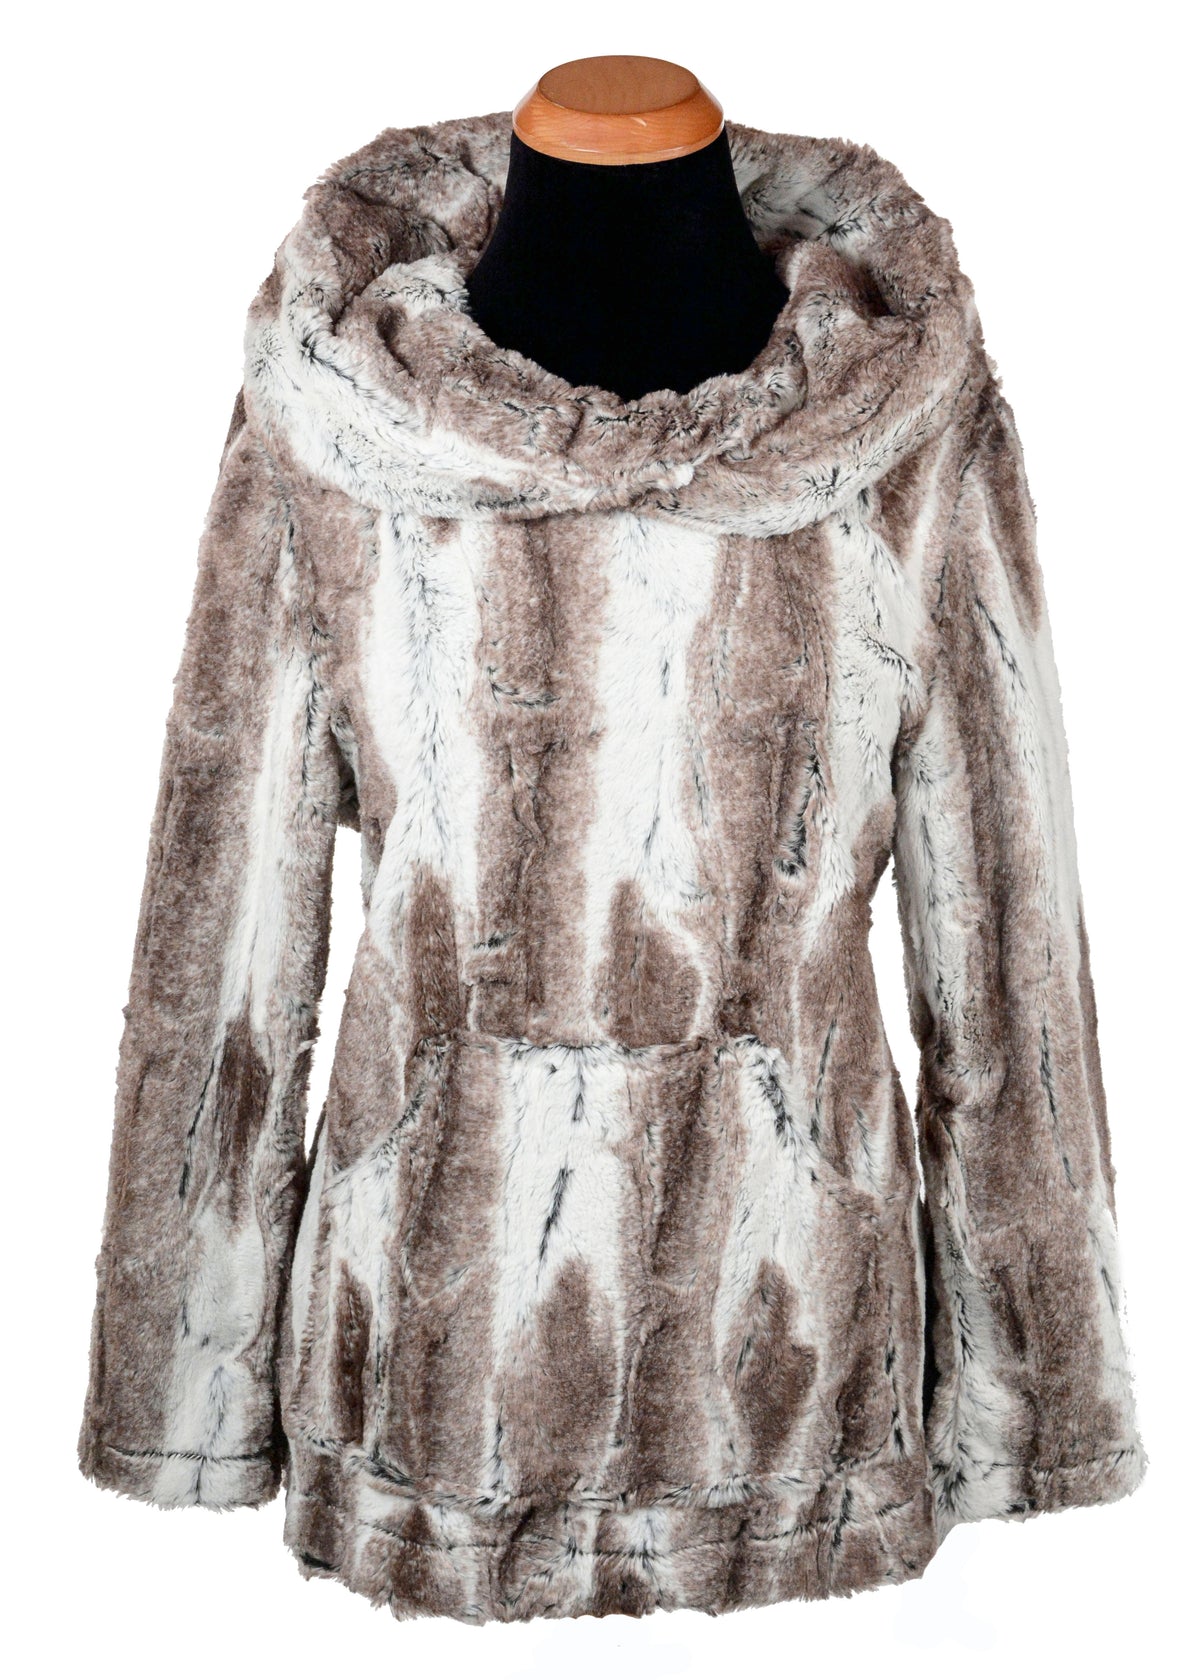 Hooded Lounger - Luxury Faux Fur in Birch handmade in Seattle WA by Pandemonium Millinery.